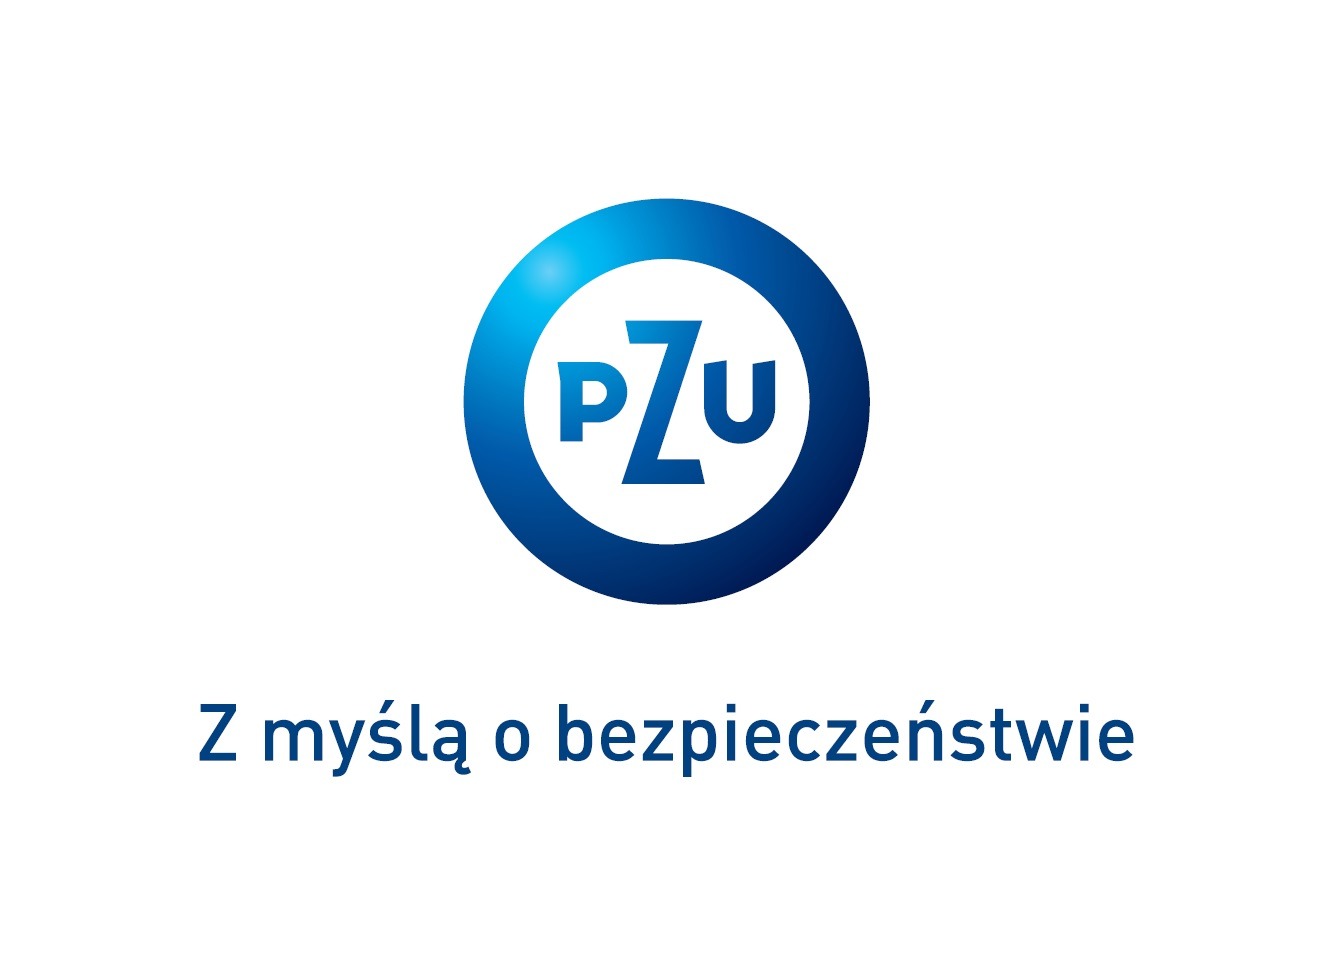 Pzu Logo